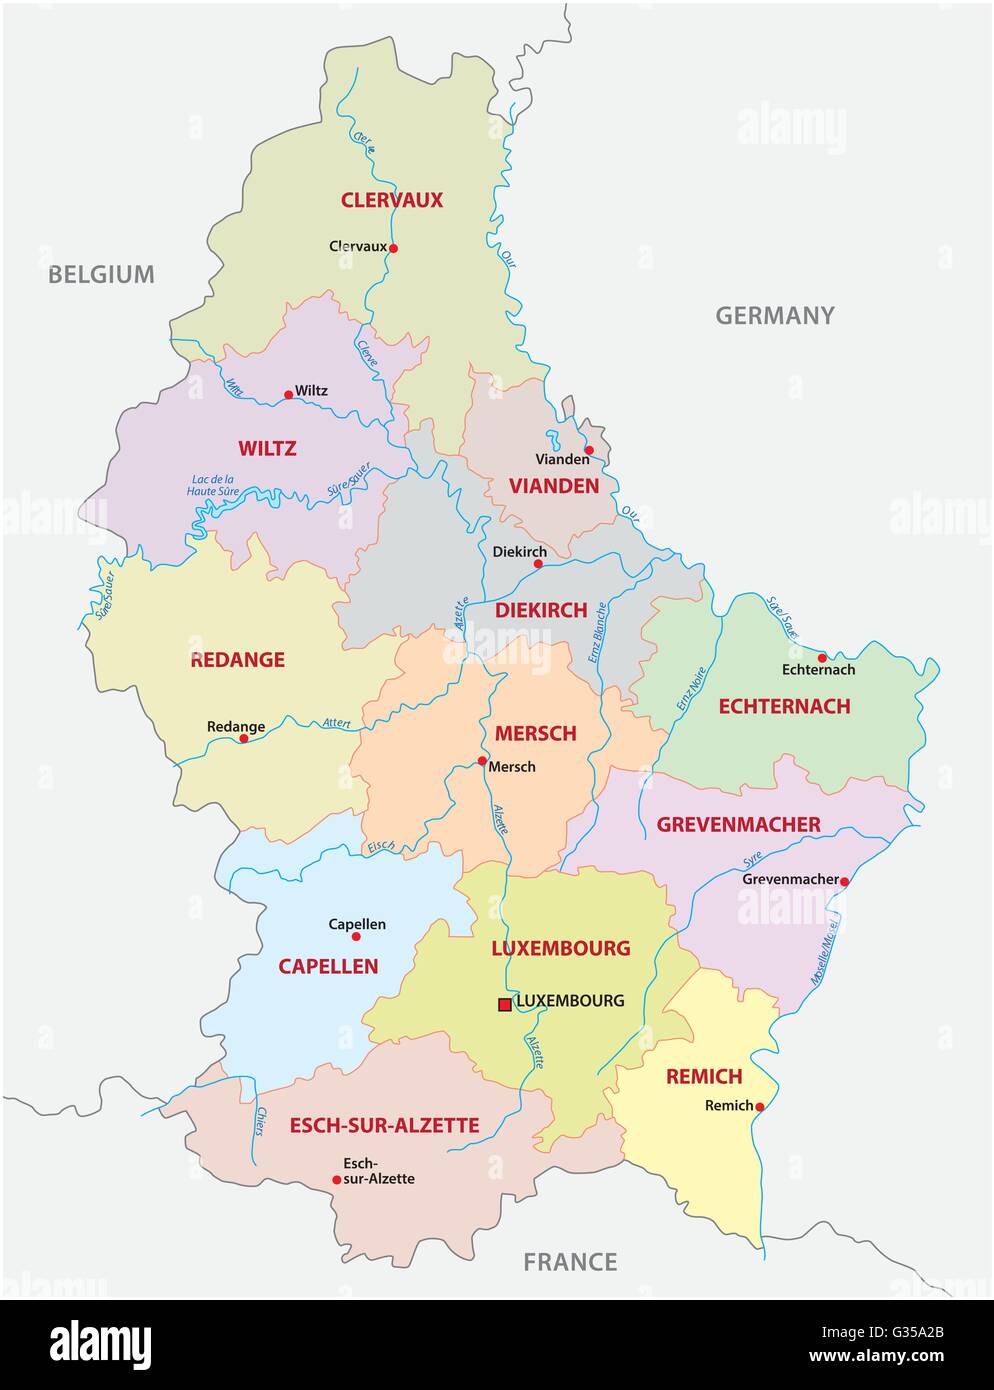 administrative und politische (Kanton) Karte des Großherzogtums Luxemburg  Stock-Vektorgrafik - Alamy